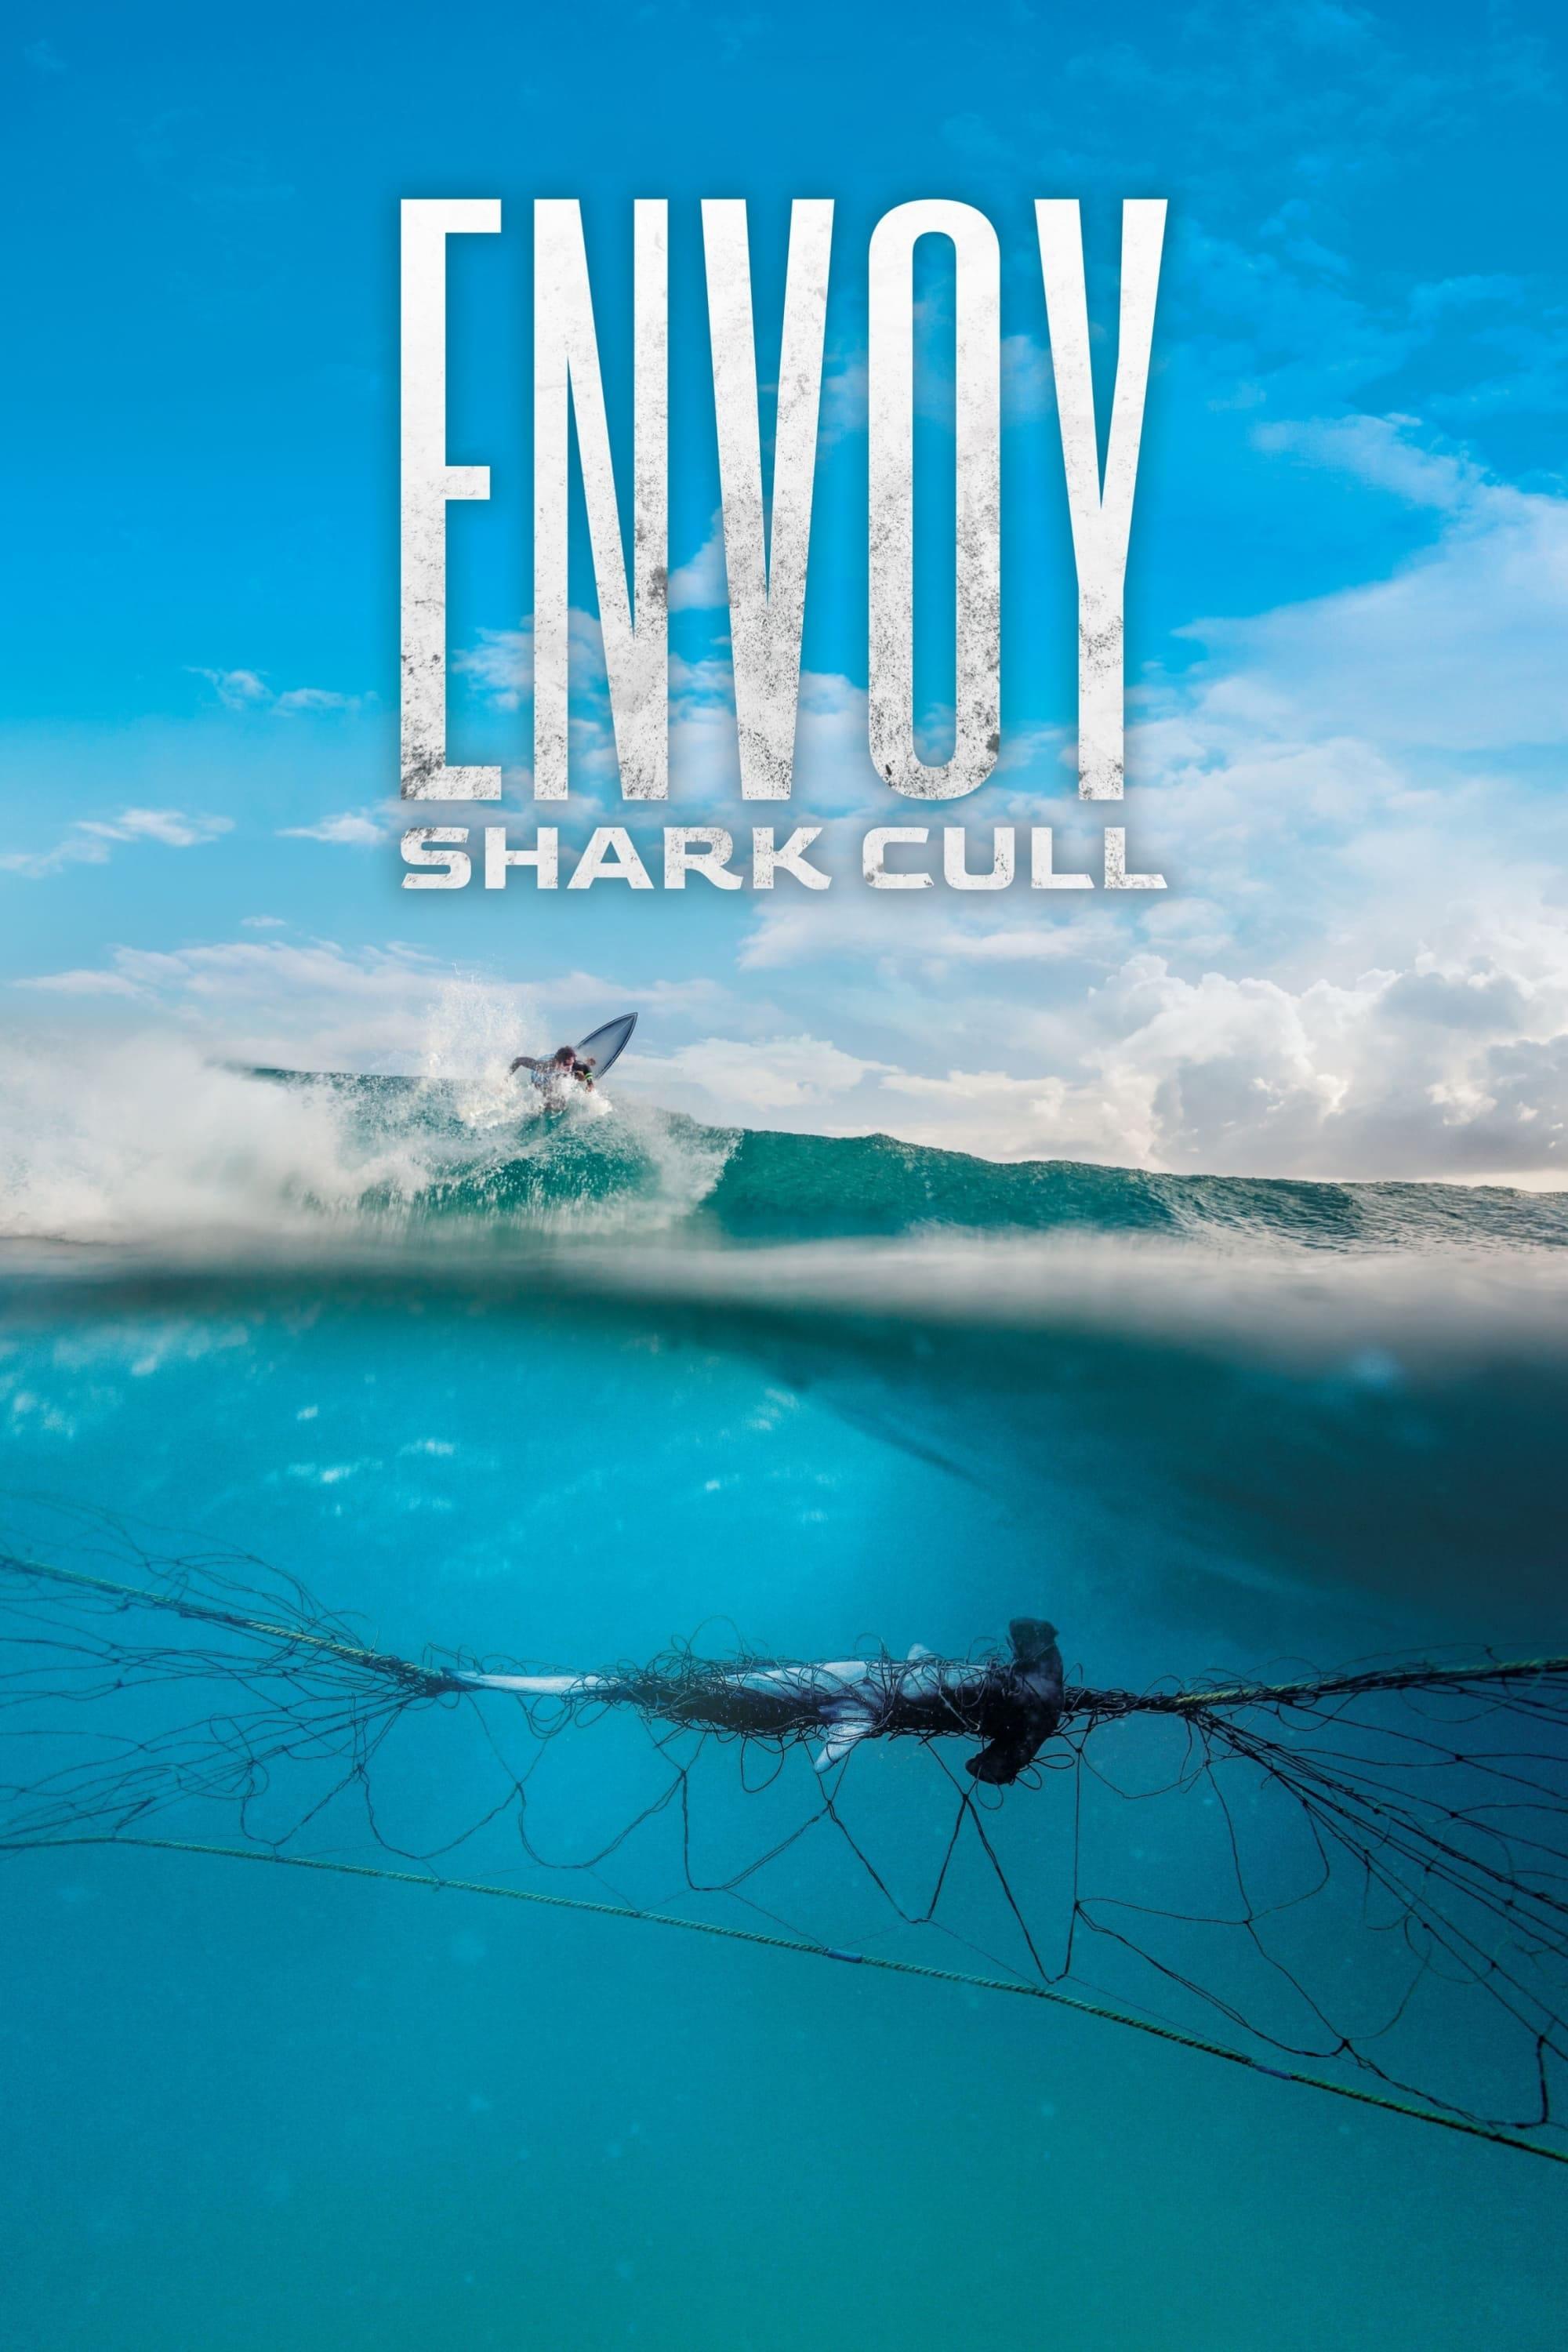 Envoy: Shark Cull poster